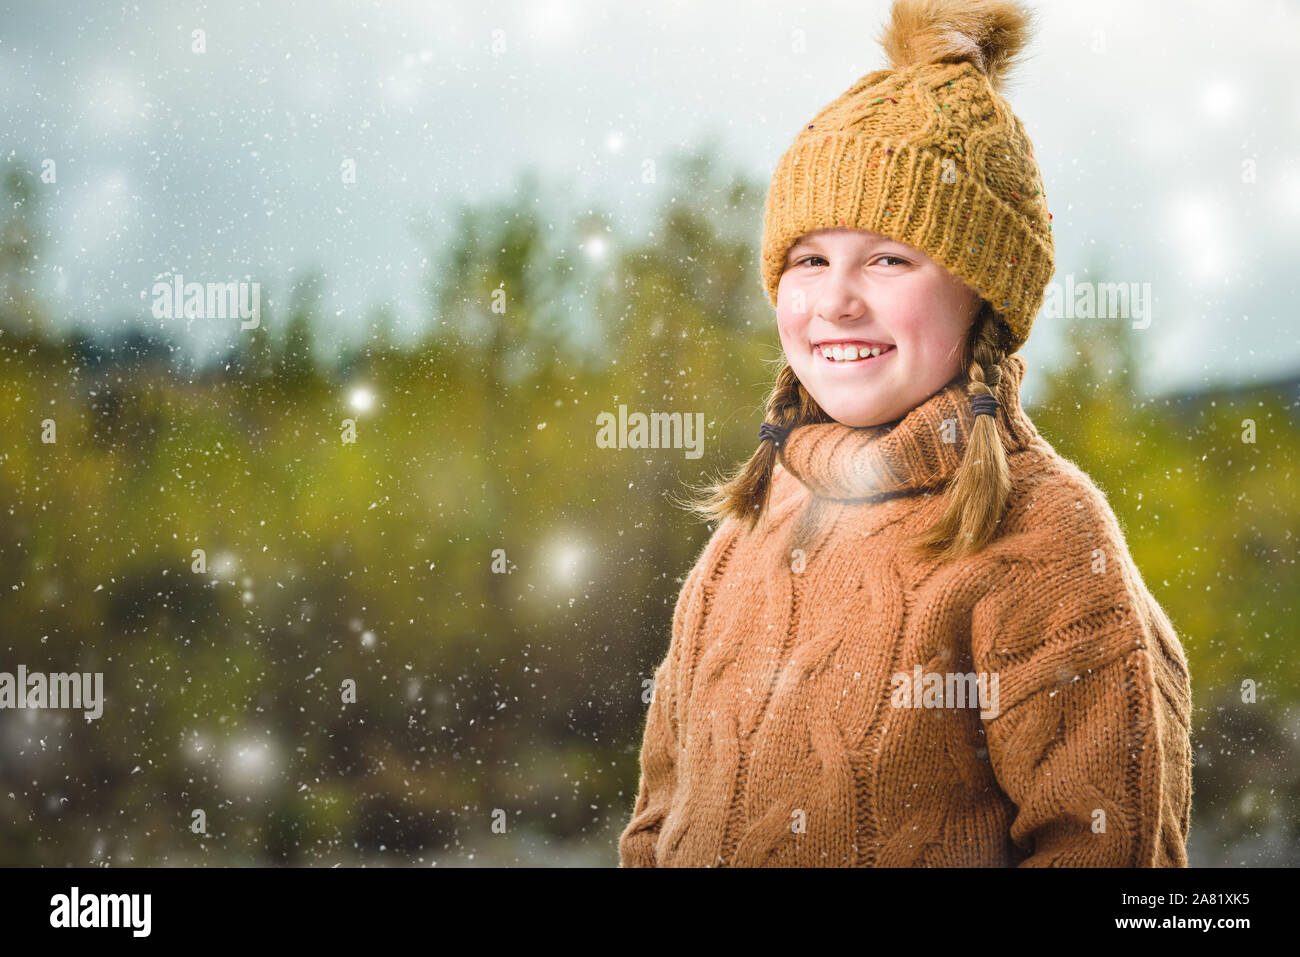 Hermosa chica rubia en un suéter de lana y una gorra. Hermoso paisaje otoñal con un río en el fondo. Foto de stock